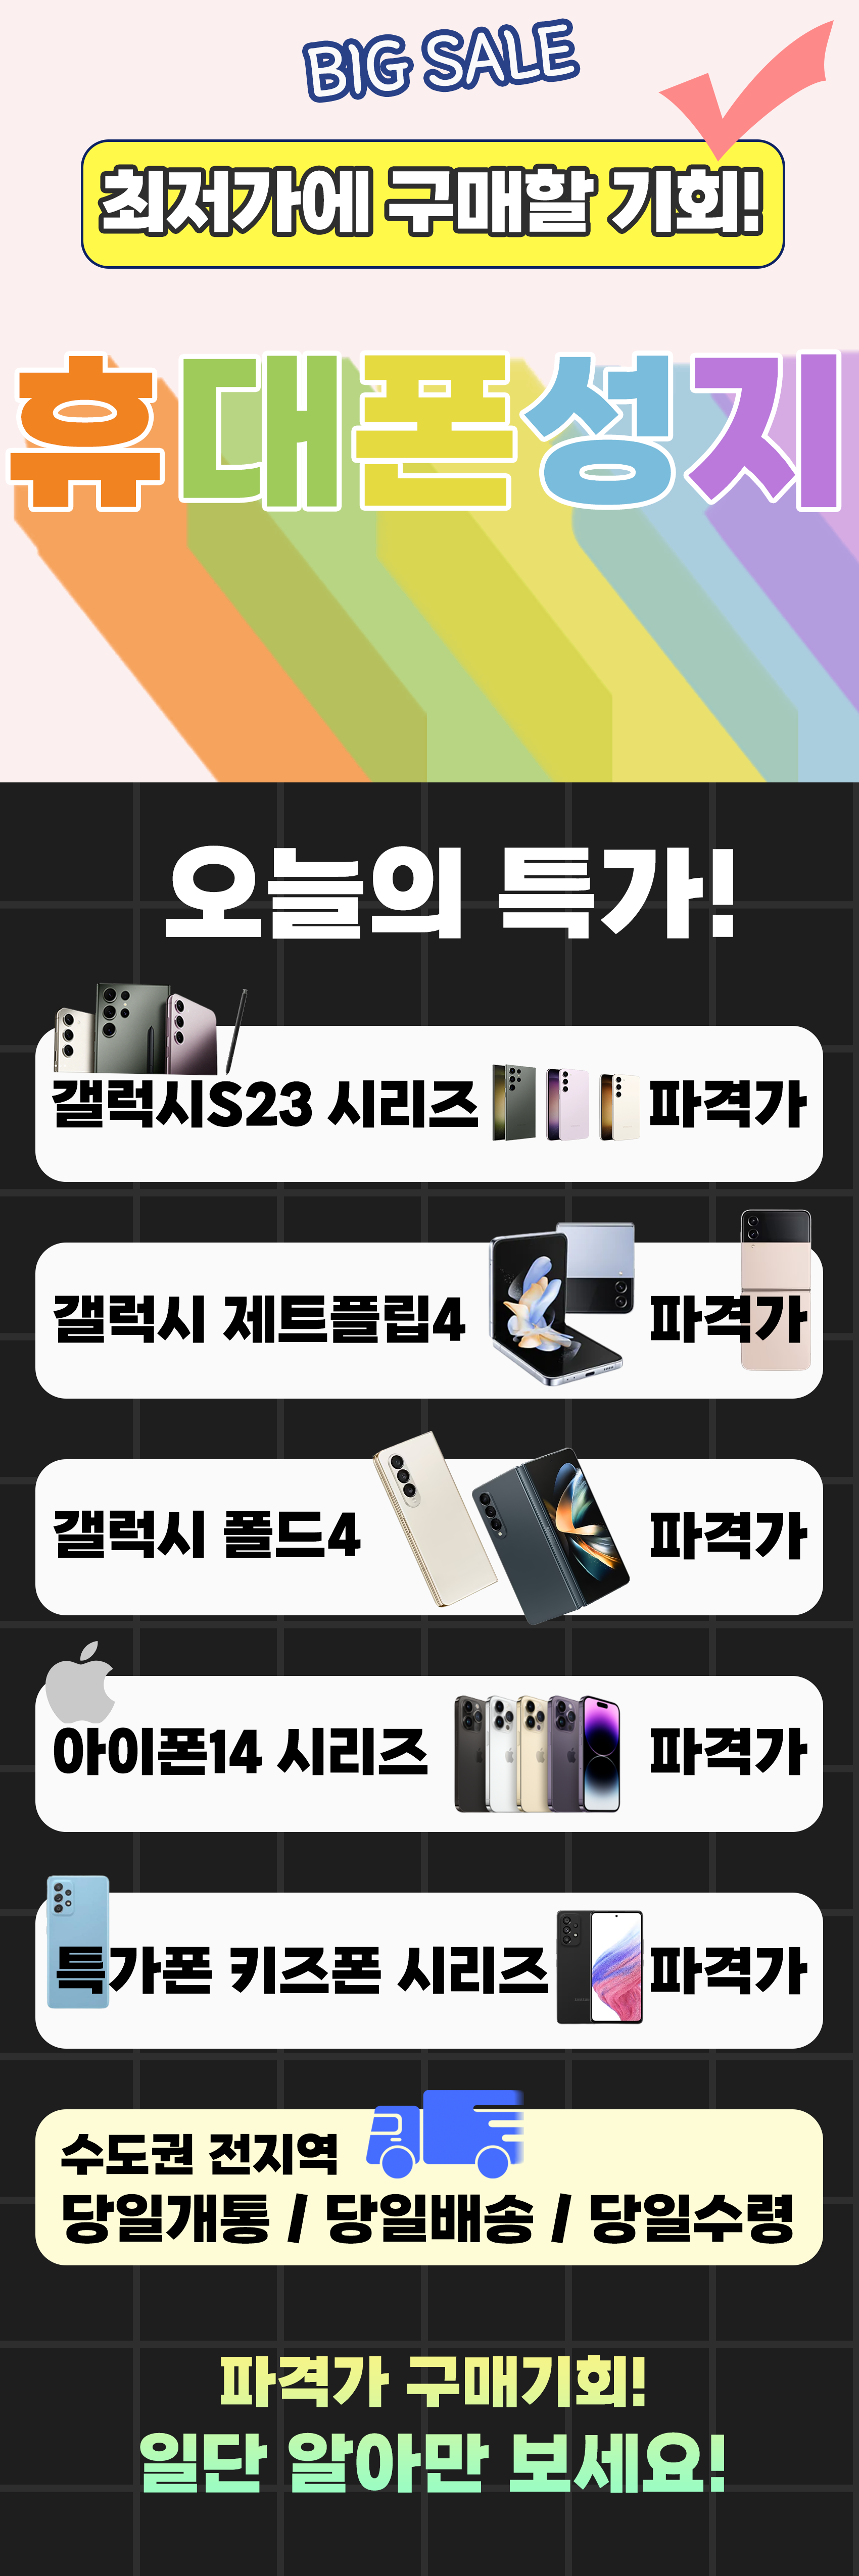 휴대폰광고배너2(이벤트).png